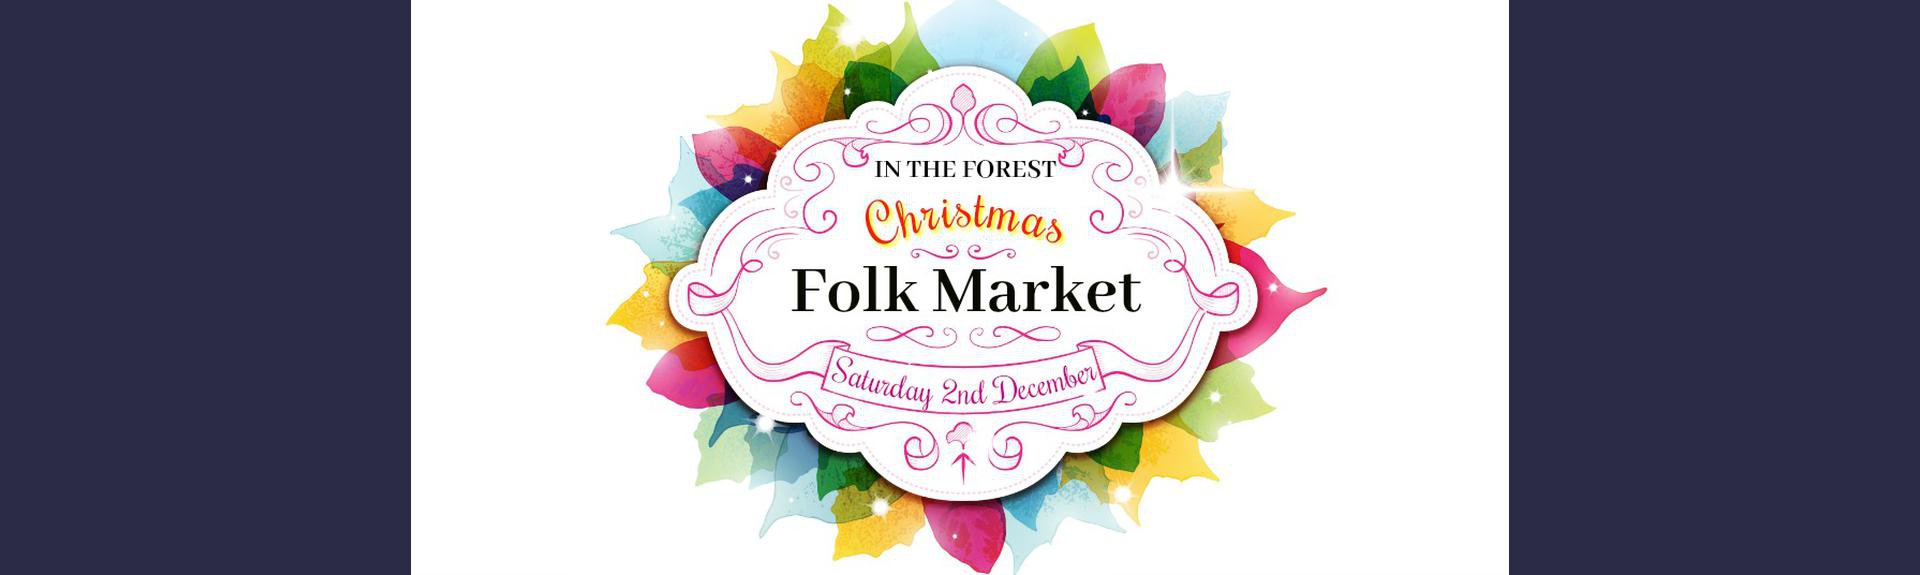 Christmas Folk Market/Fair